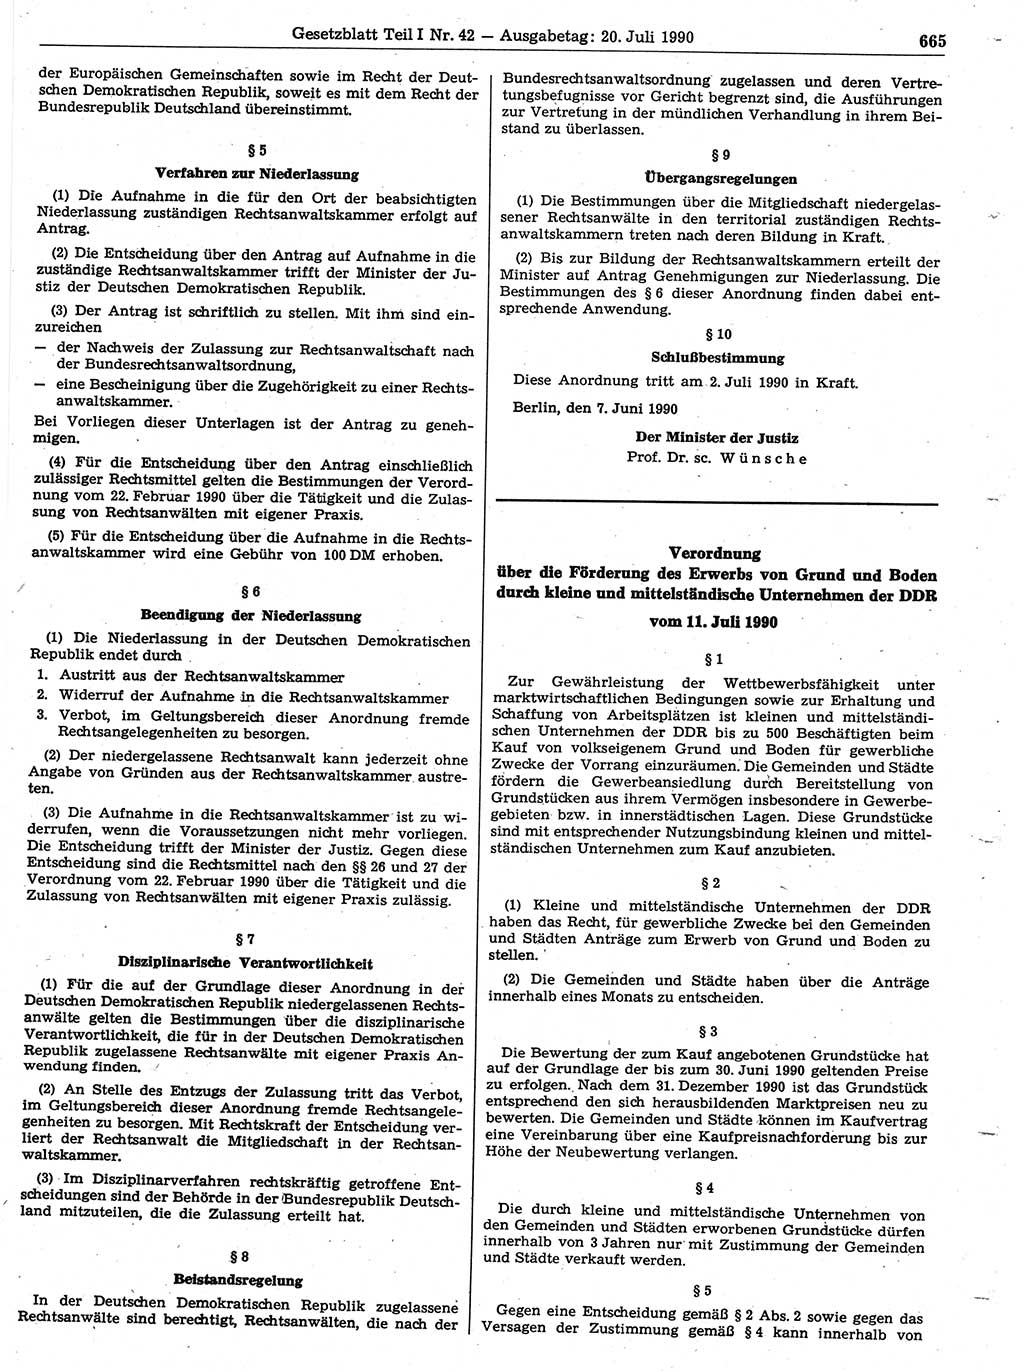 Gesetzblatt (GBl.) der Deutschen Demokratischen Republik (DDR) Teil Ⅰ 1990, Seite 665 (GBl. DDR Ⅰ 1990, S. 665)